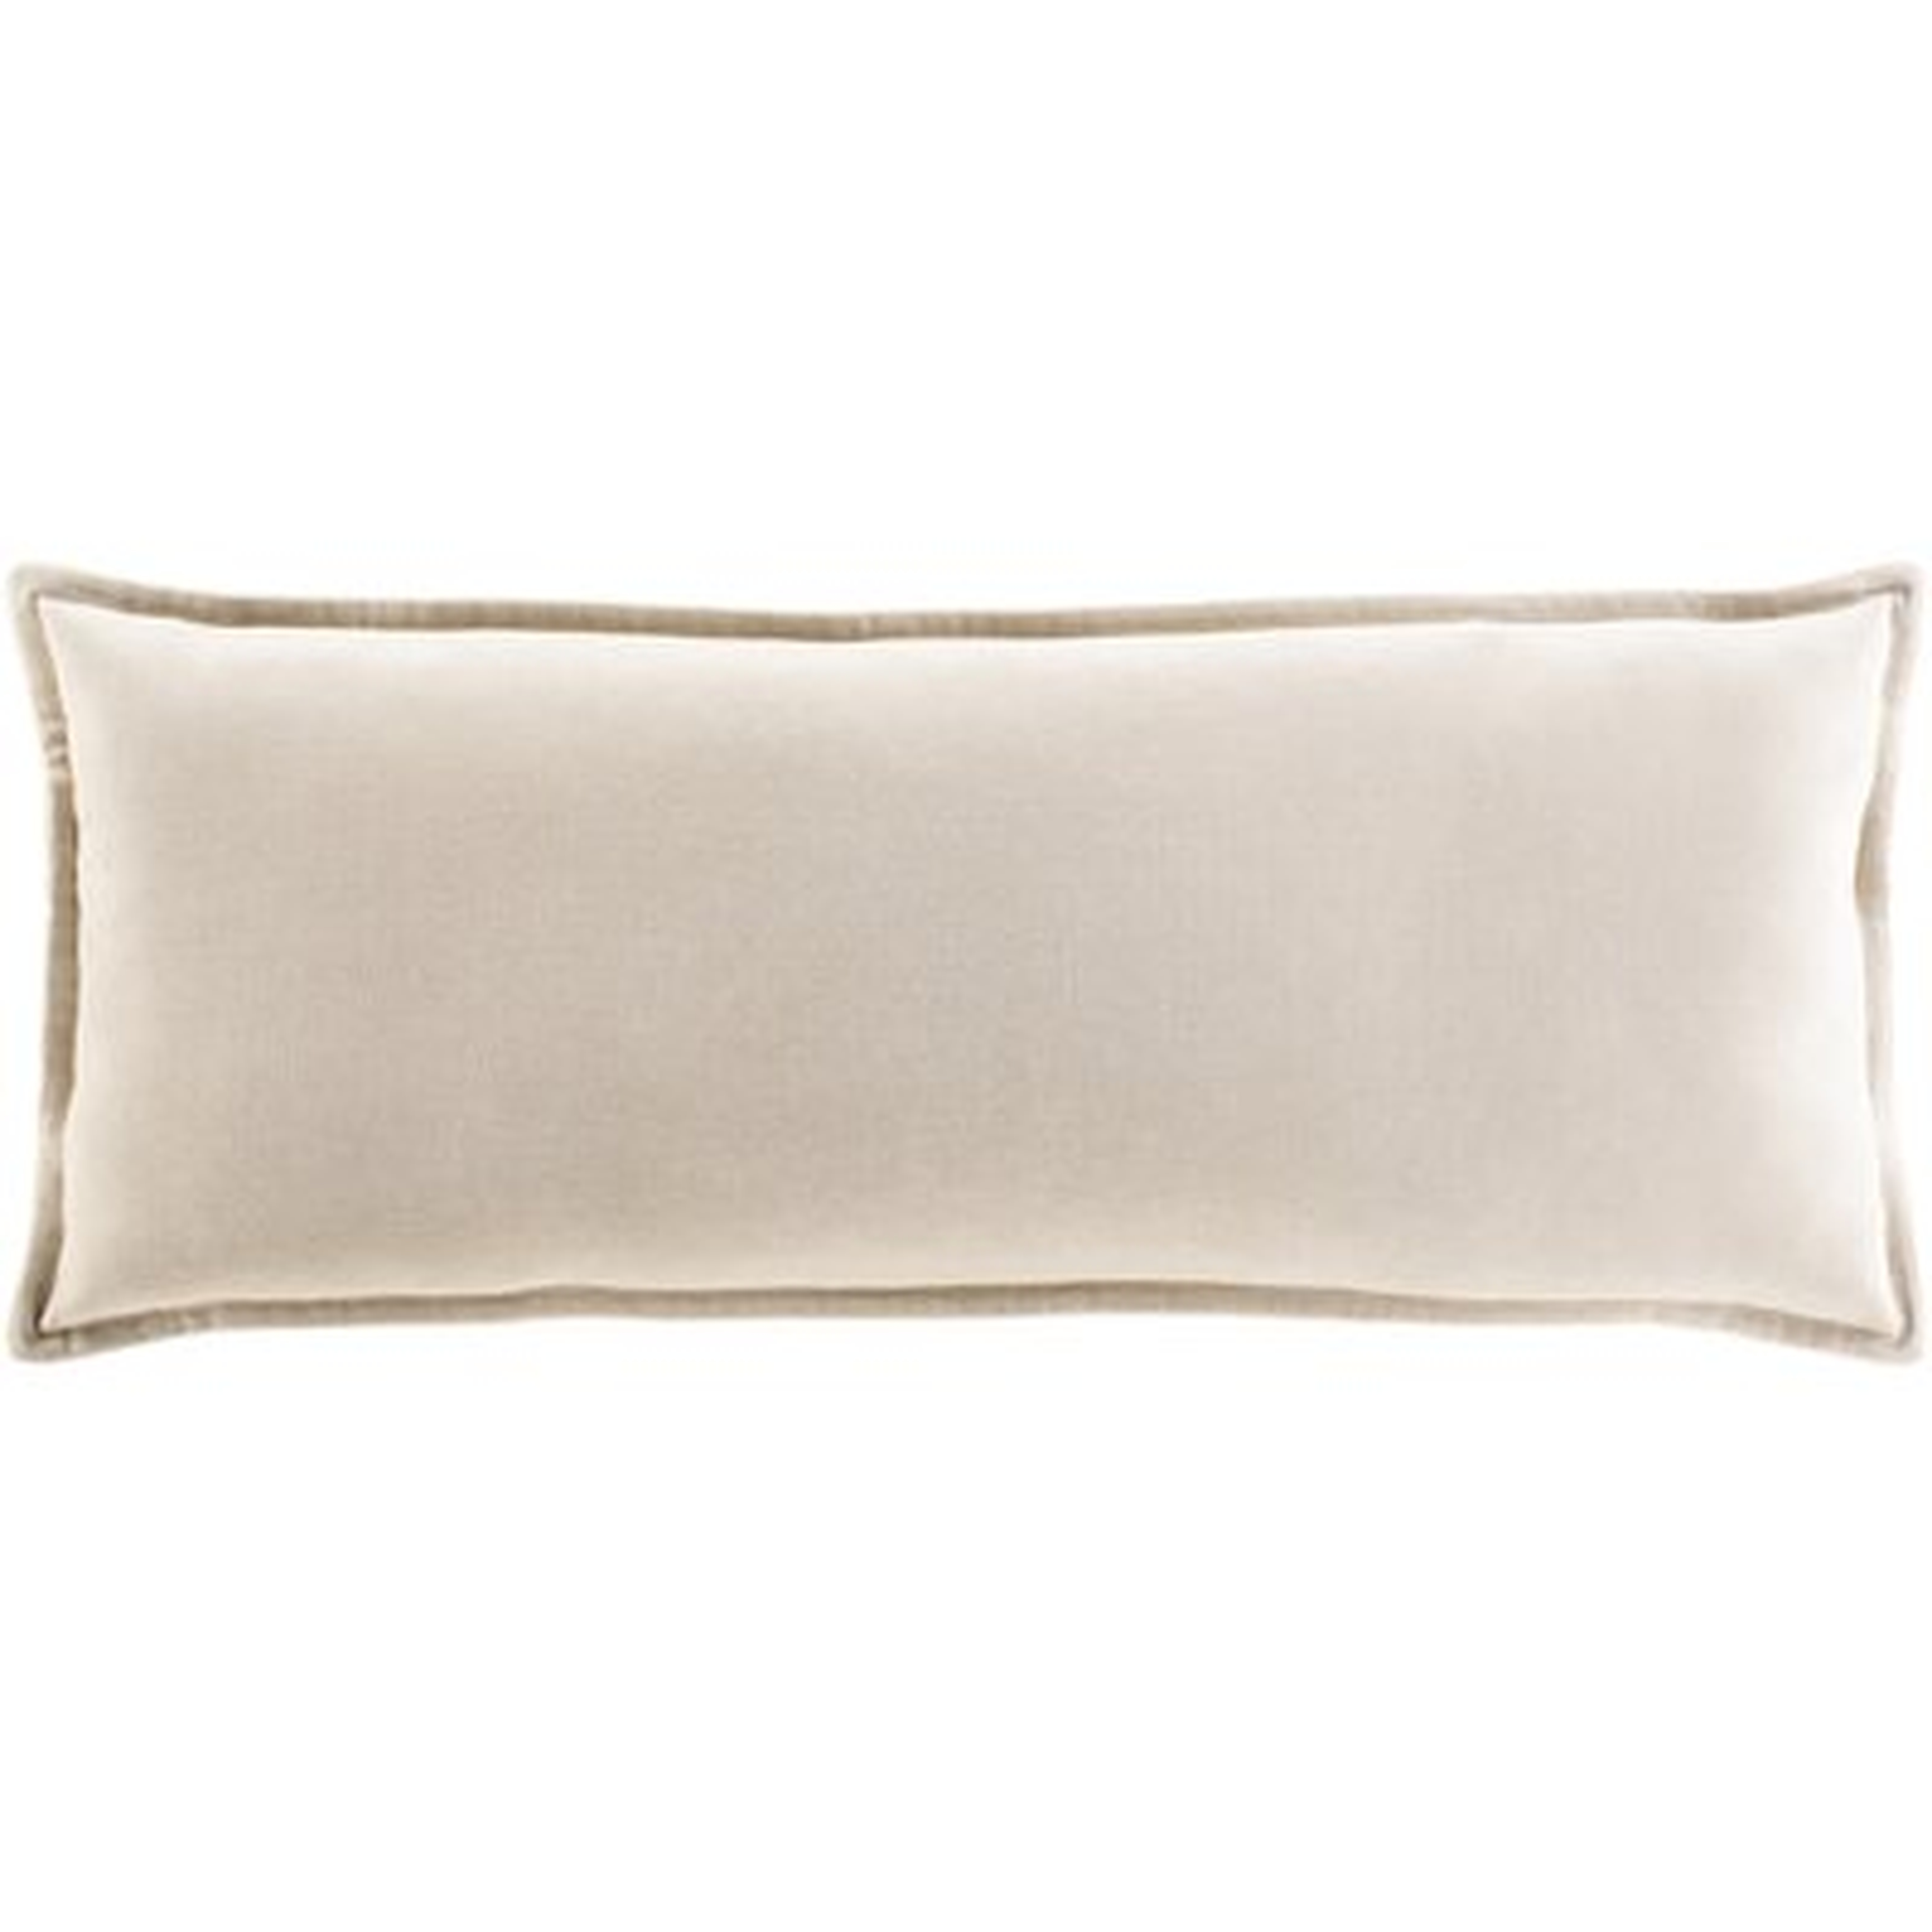 Ahnaya Cotton Lumbar Pillow Cover - Wayfair